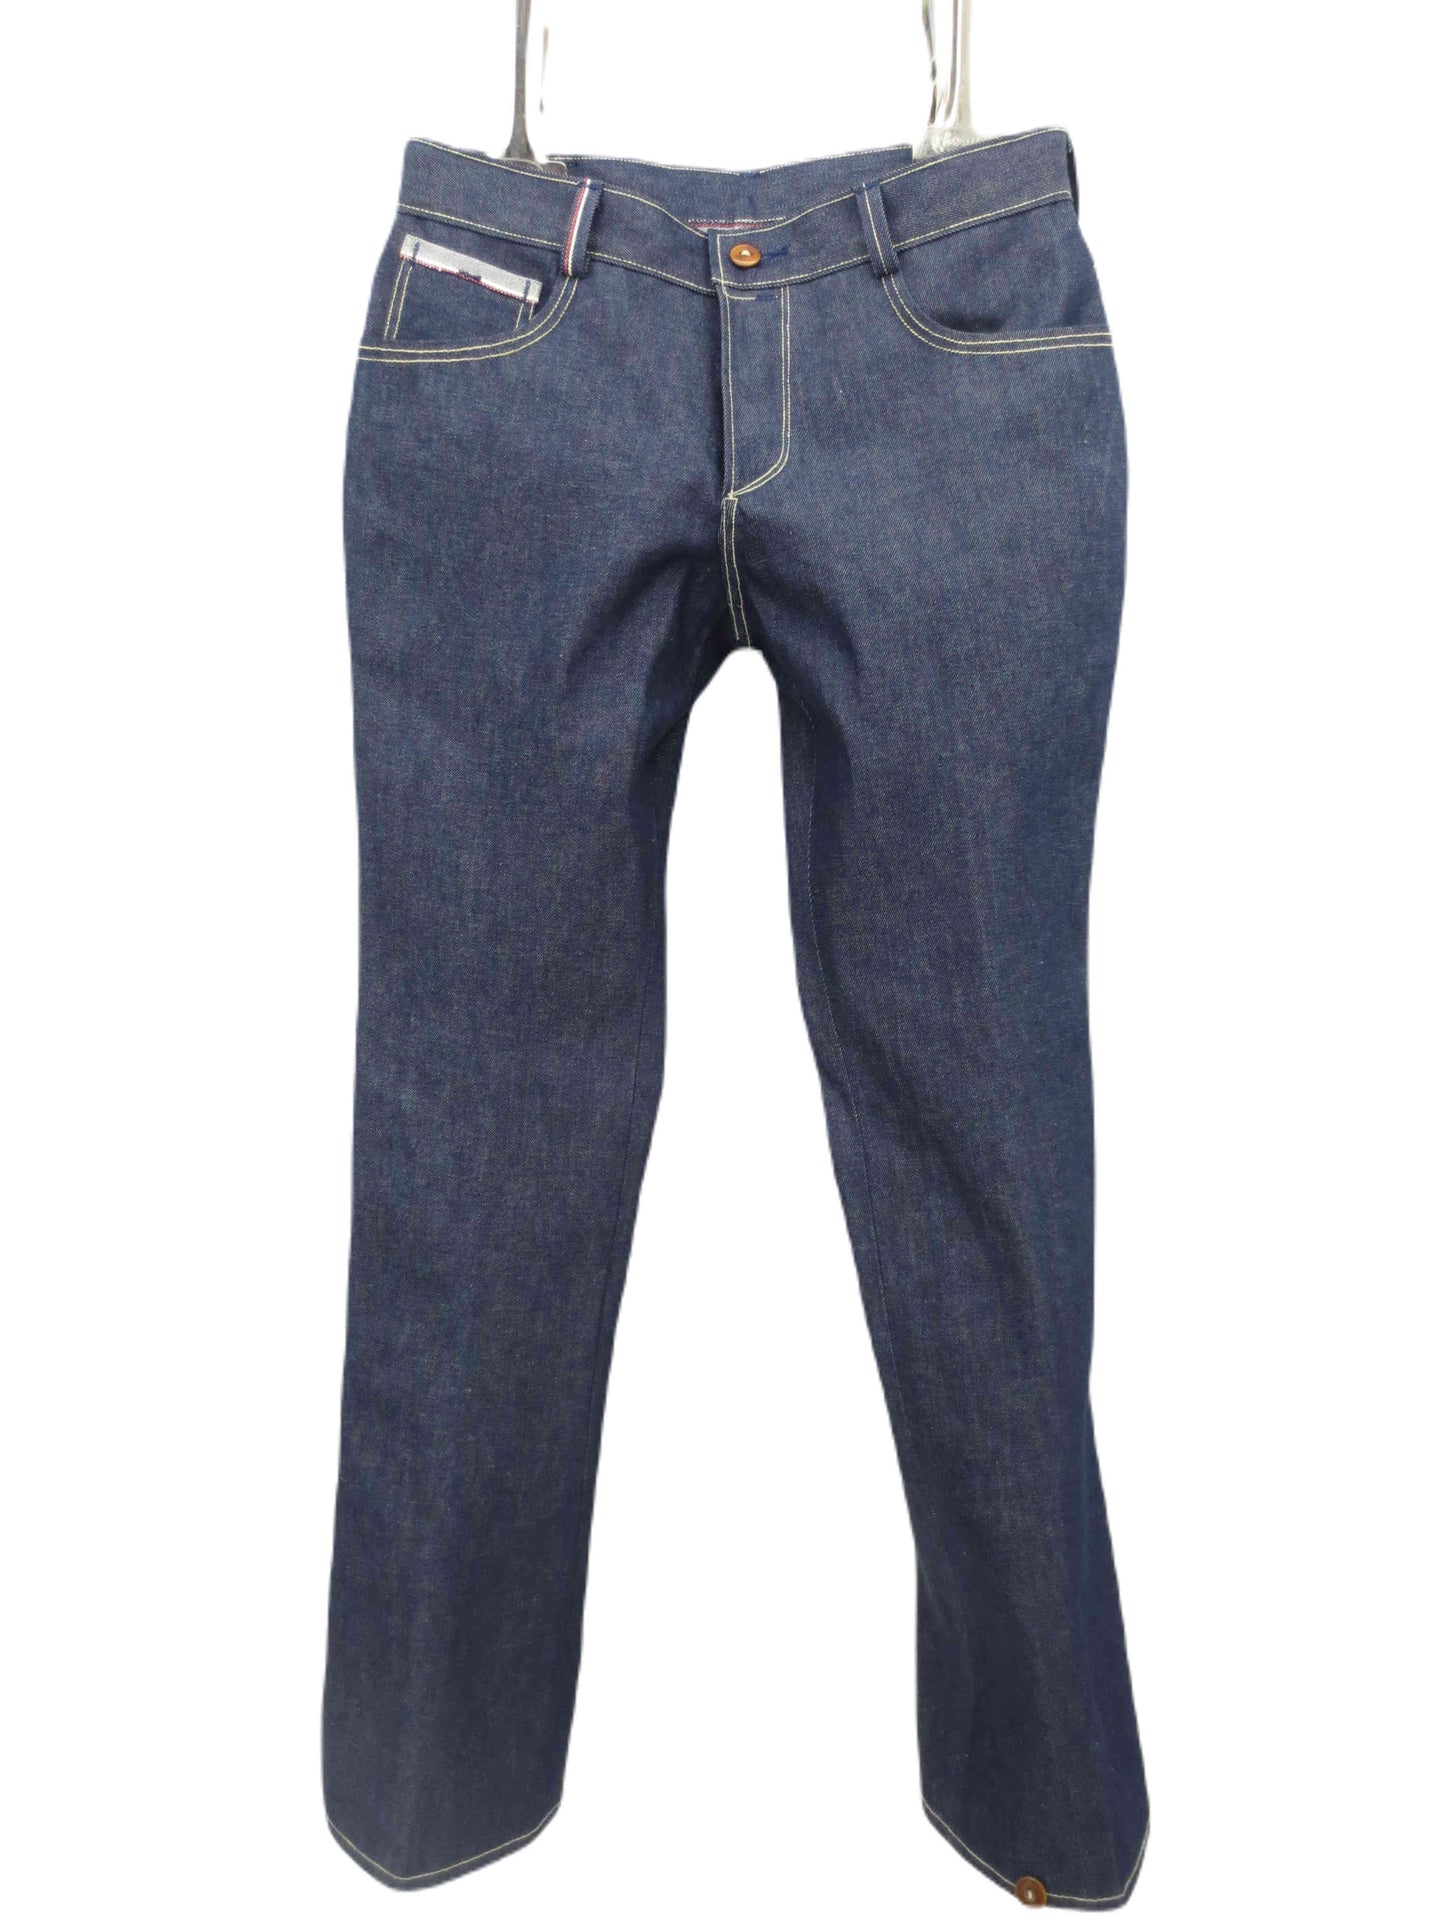 vooraanzicht model  2570  passende jeans